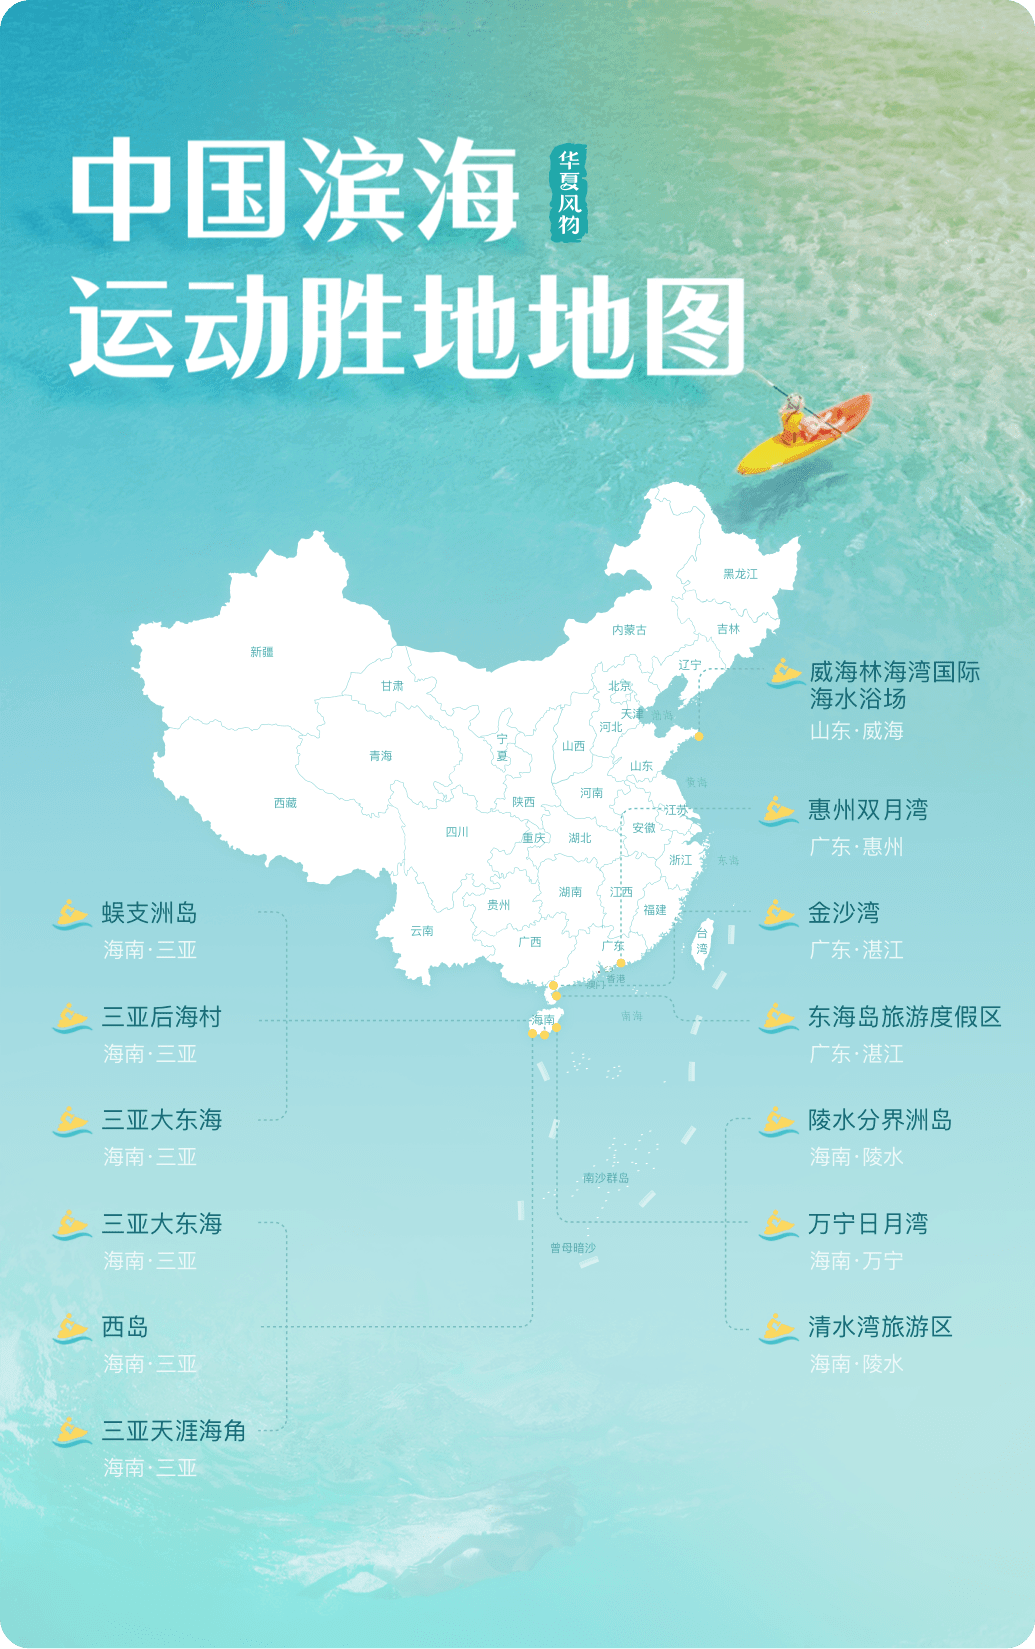 中国滨海运动胜地地图 ©华夏风物